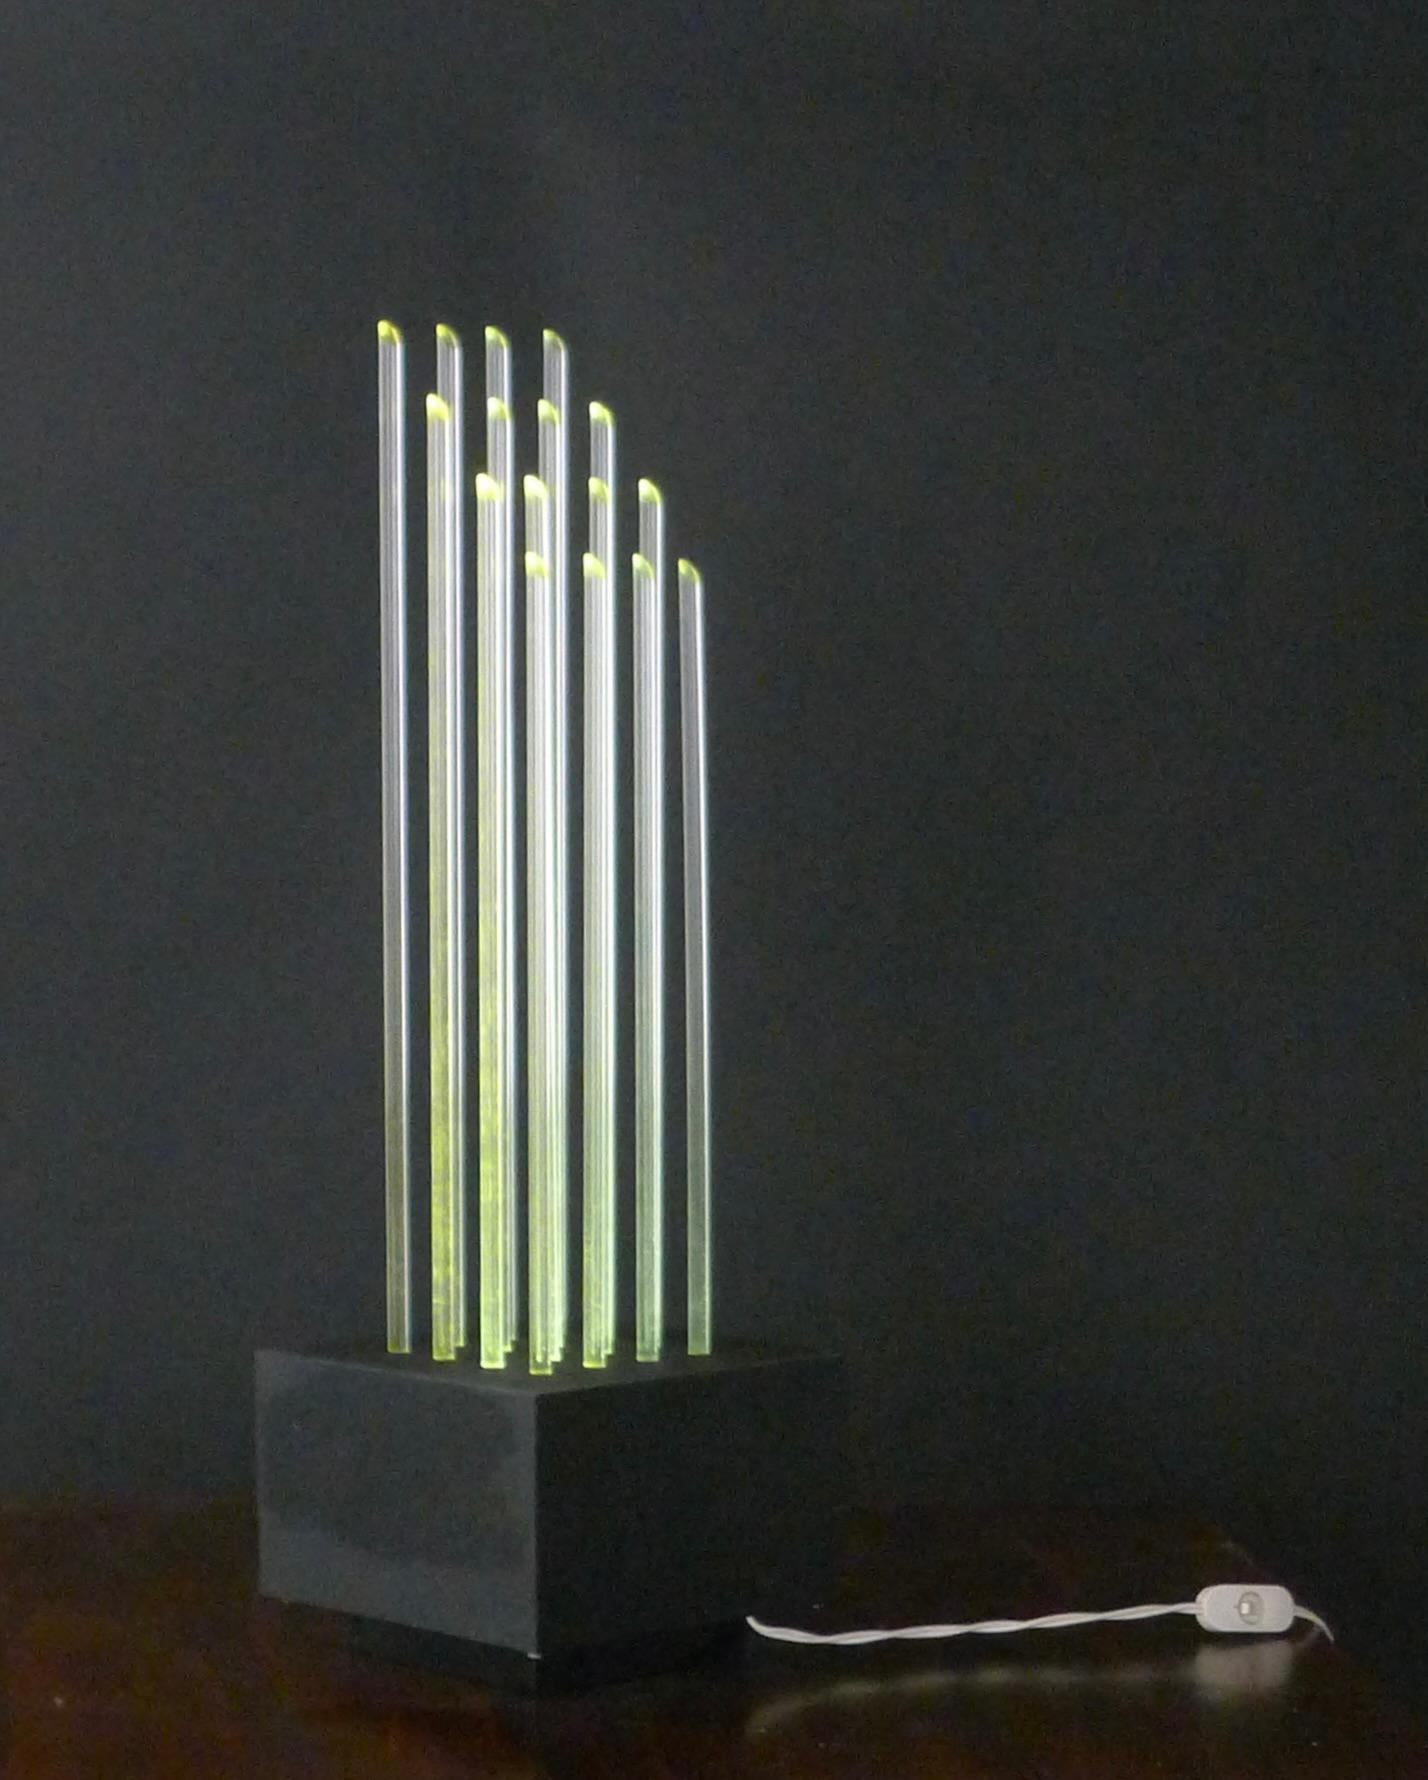 Aluminum Gianfranco Fini & Fabrizio Cocchia for New Lamp, 1970s Plexiglass Table Light For Sale